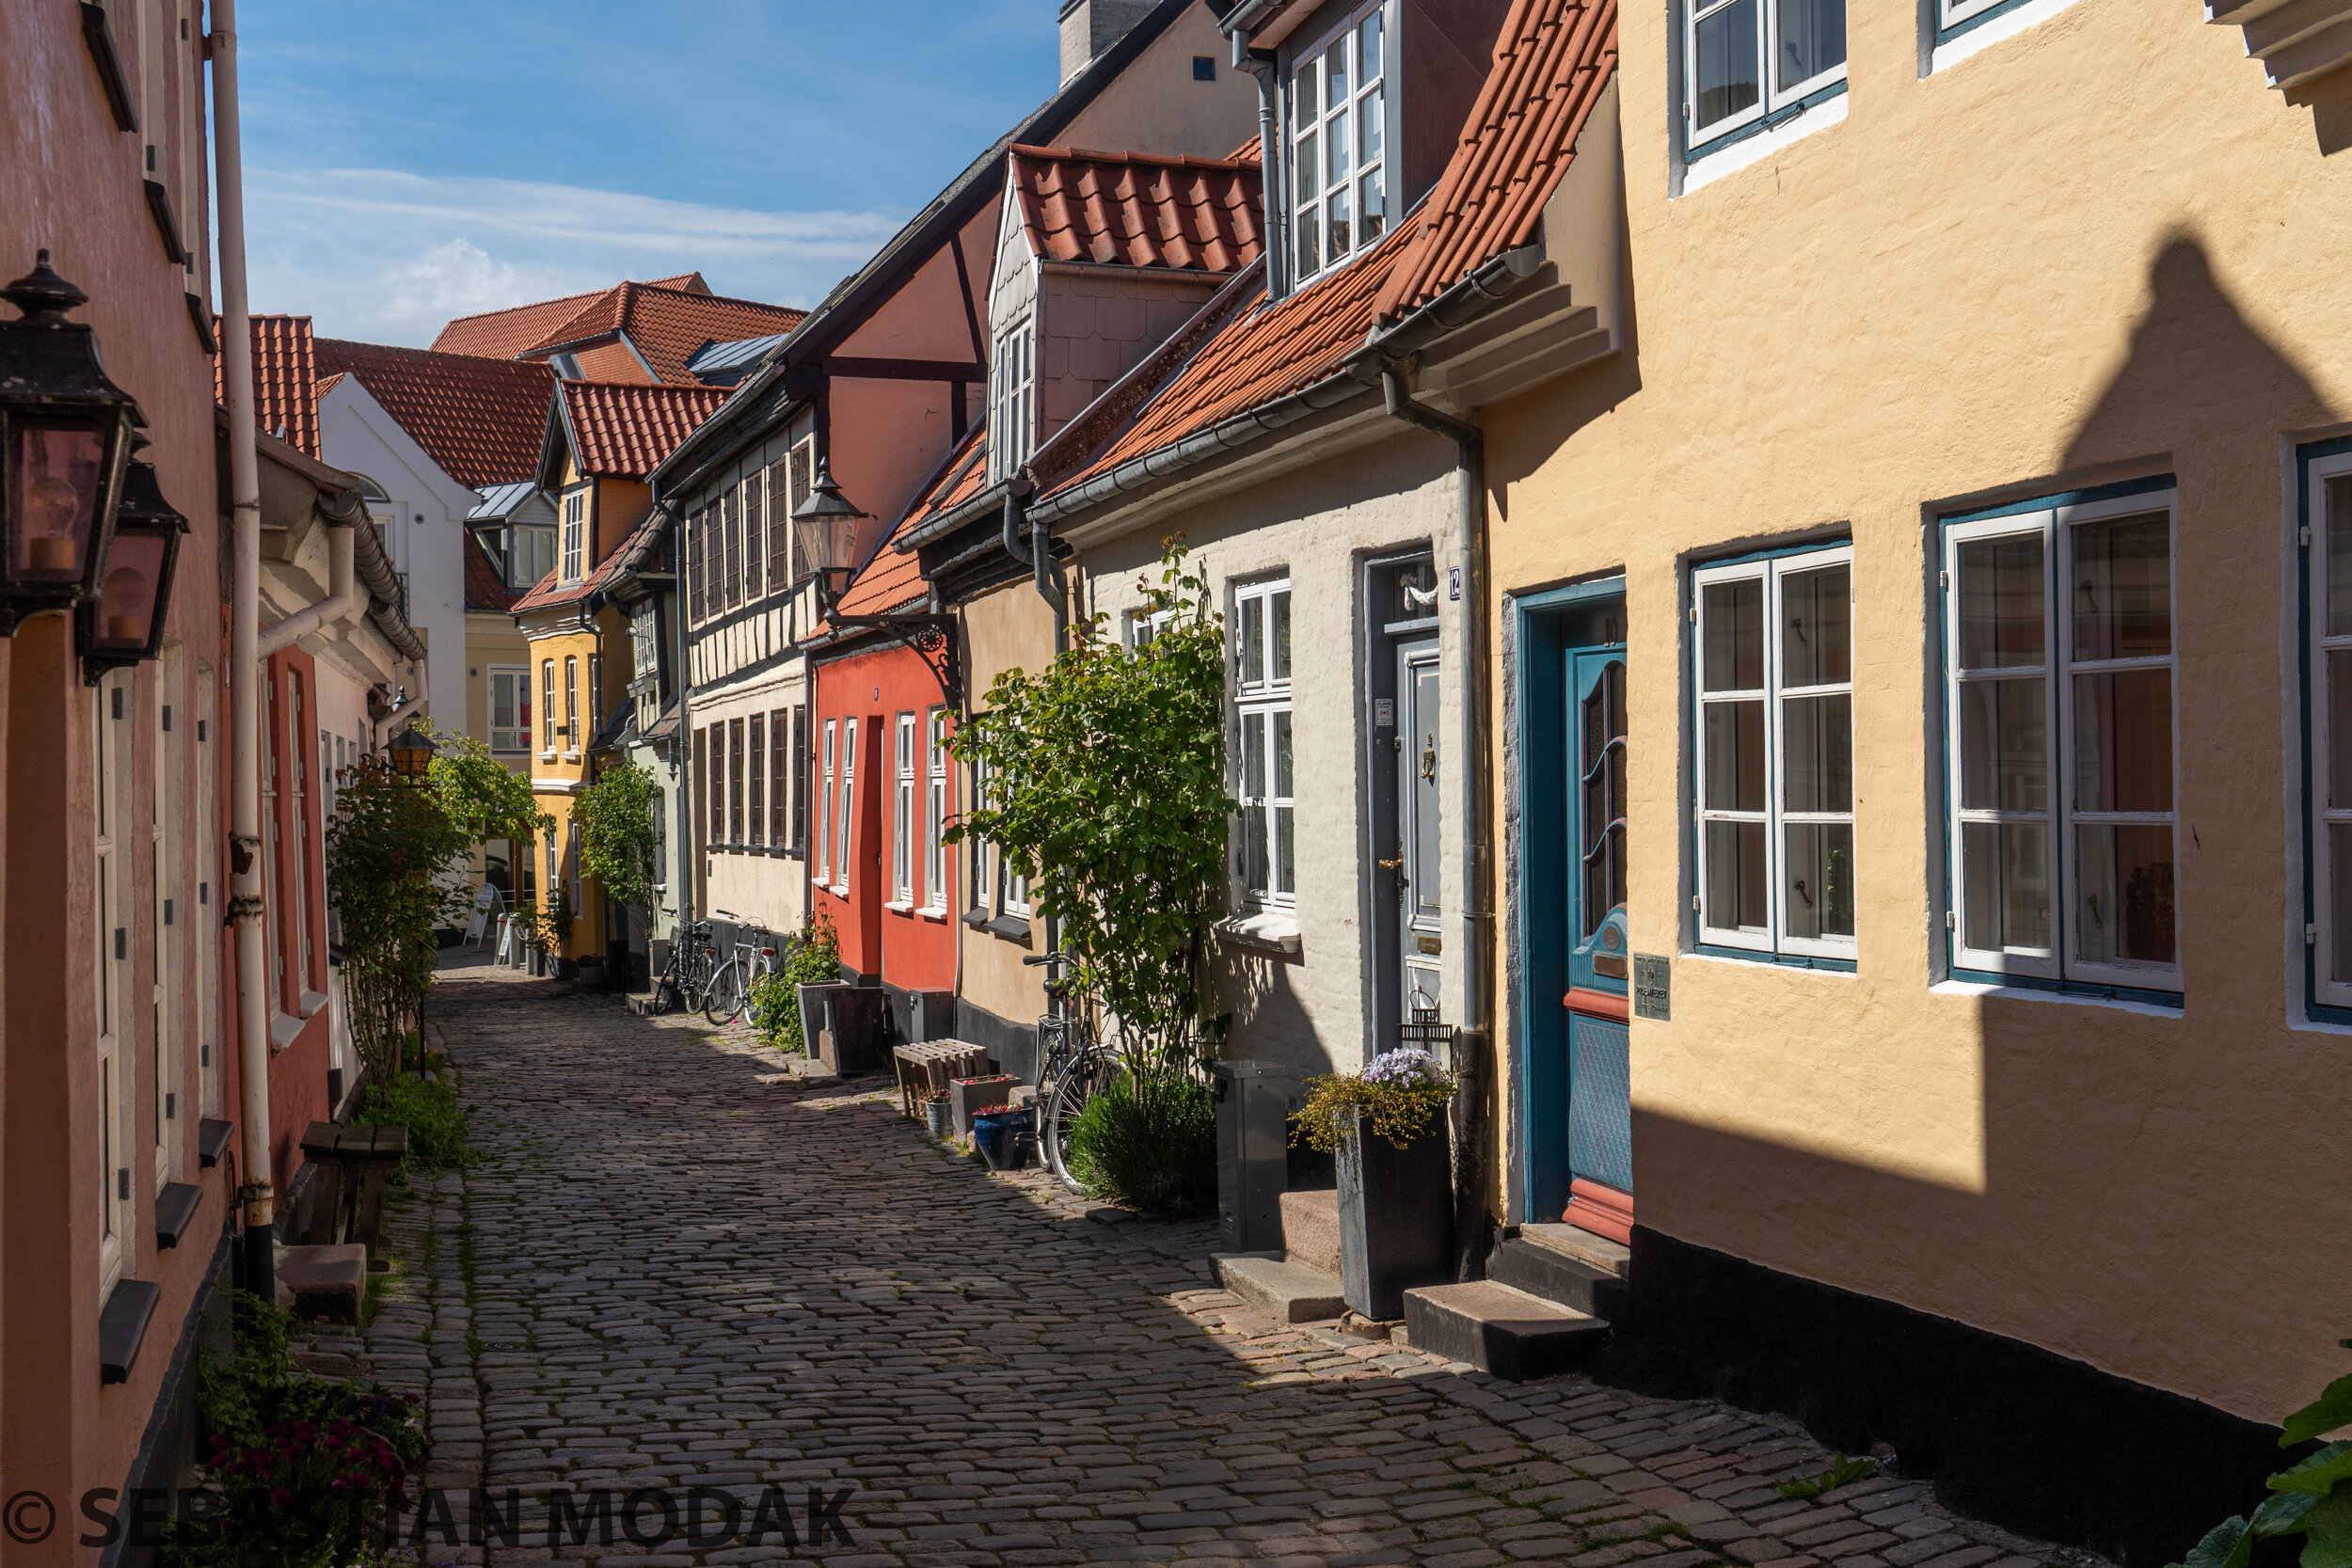  Aalborg, Denmark 